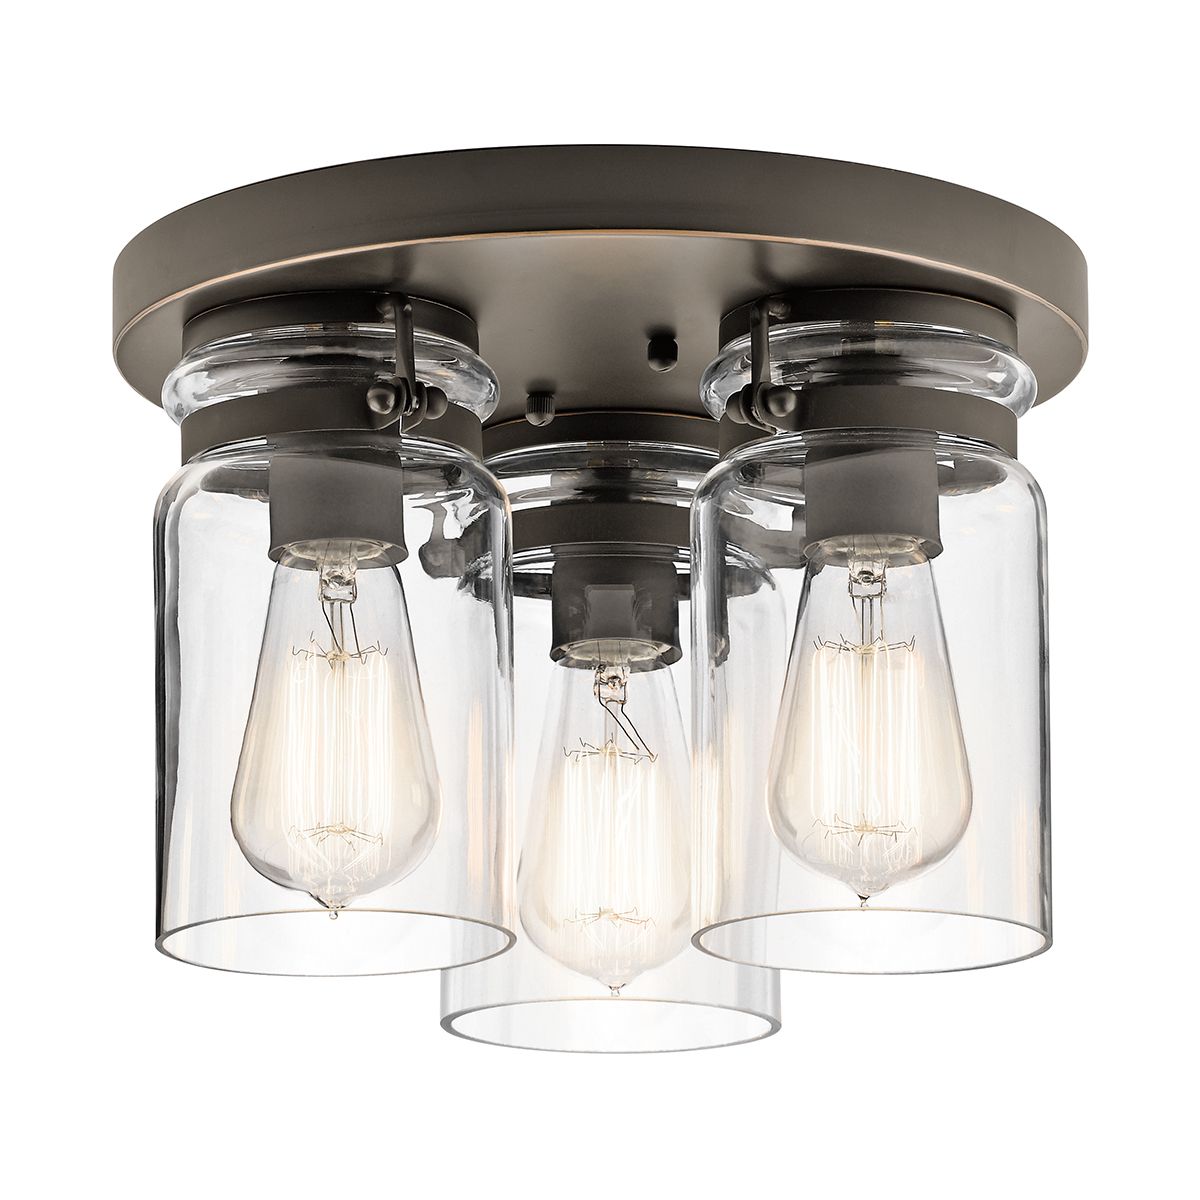 ePlafoniera - Lampa sufitowa szklany klosz (stary brąz) plafon do kuchni salonu 1xE27, Kichler (Brinley)